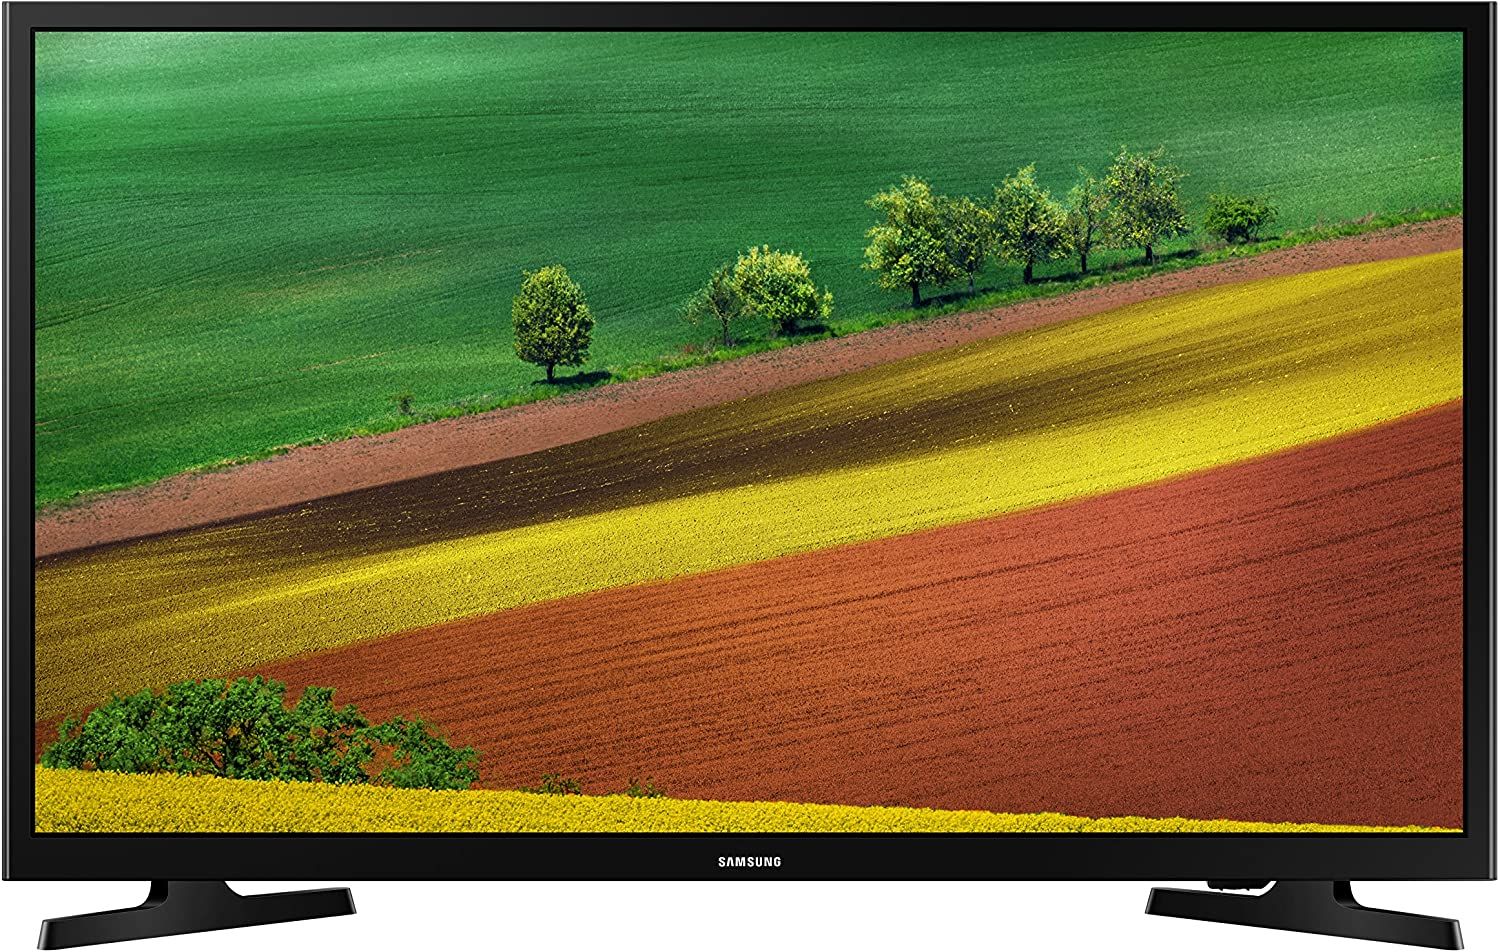 Best Samsung TVs (Updated 2020)